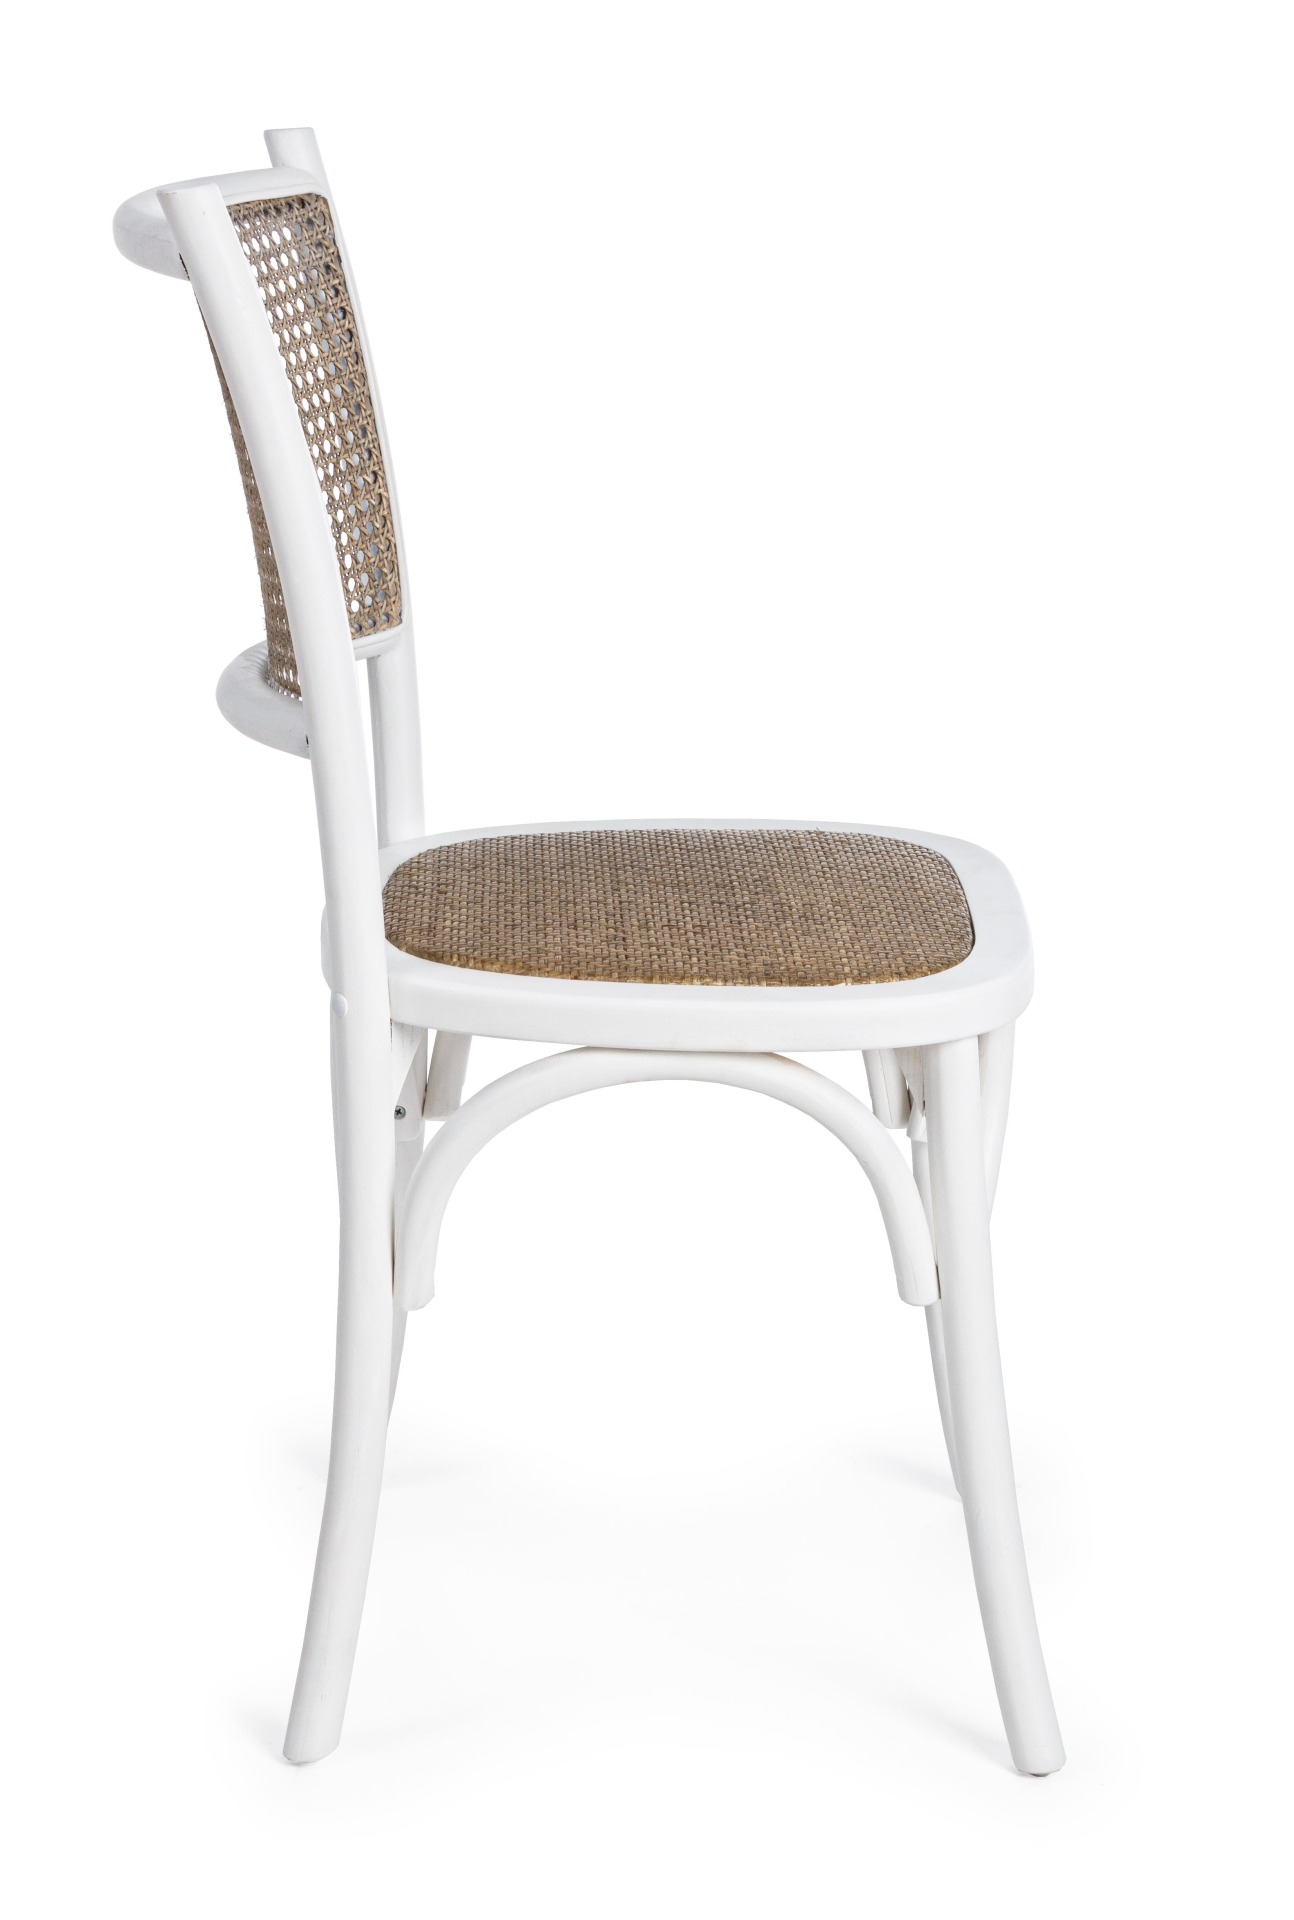 Der Stuhl Carrel überzeugt mit seinem klassischen Design. Gefertigt wurde der Stuhl aus Ulmenholz, welches einen weißen Farbton besitzt. Die Sitz- und Rückenfläche sind aus Rattan. Die Sitzhöhe beträgt 46 cm.